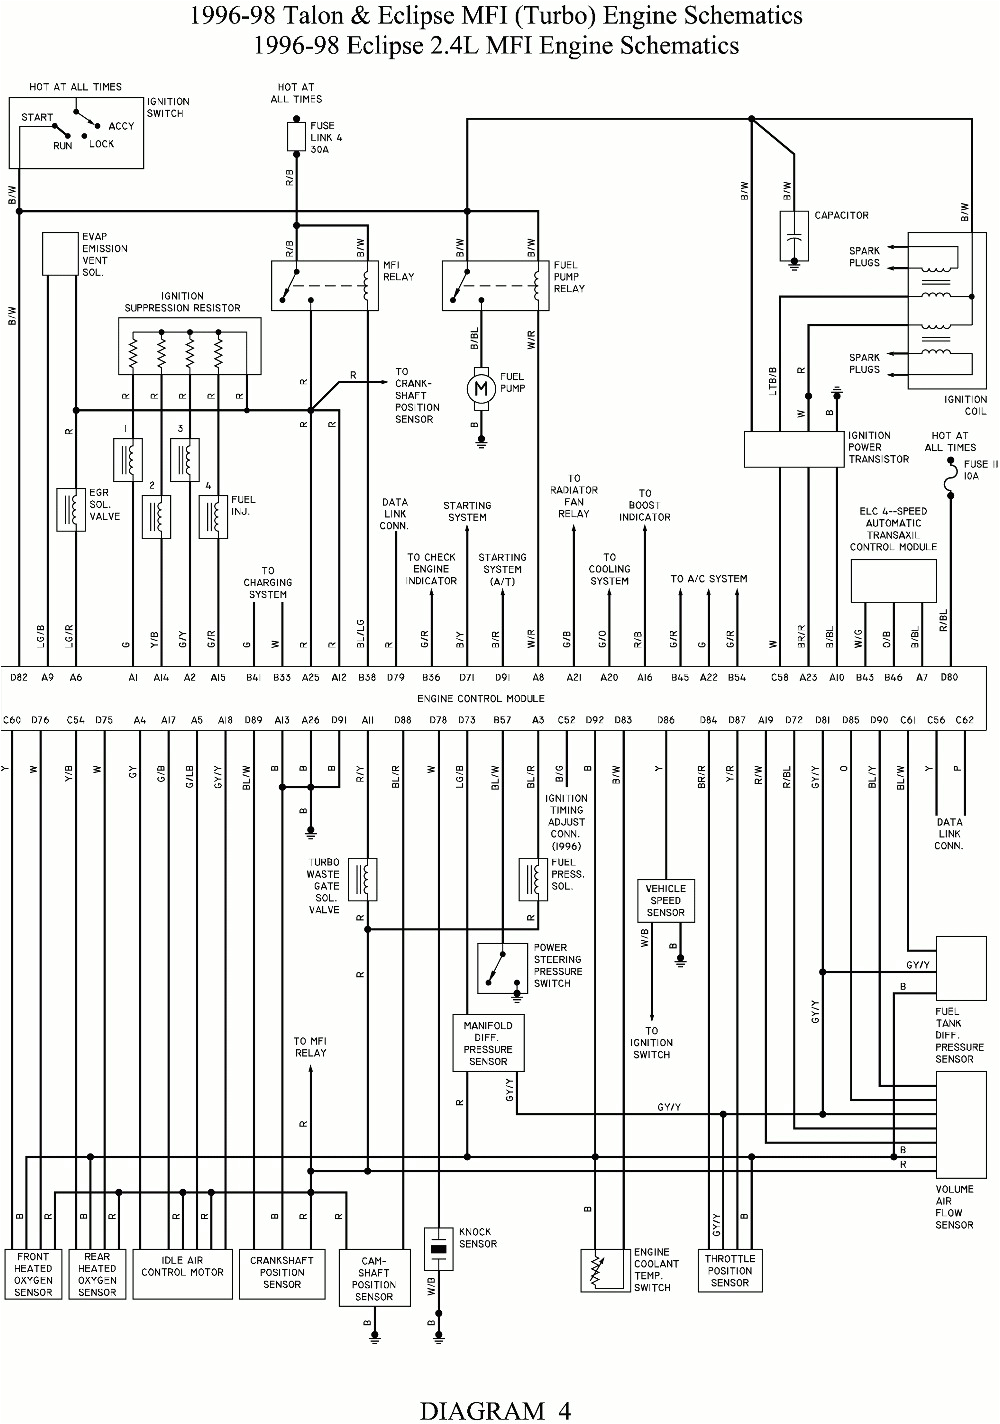 mitsubishi 6g72 wiring diagram wiring diagram review mitsubishi 4g64 wiring diagram wiring diagram view mitsubishi 6g72